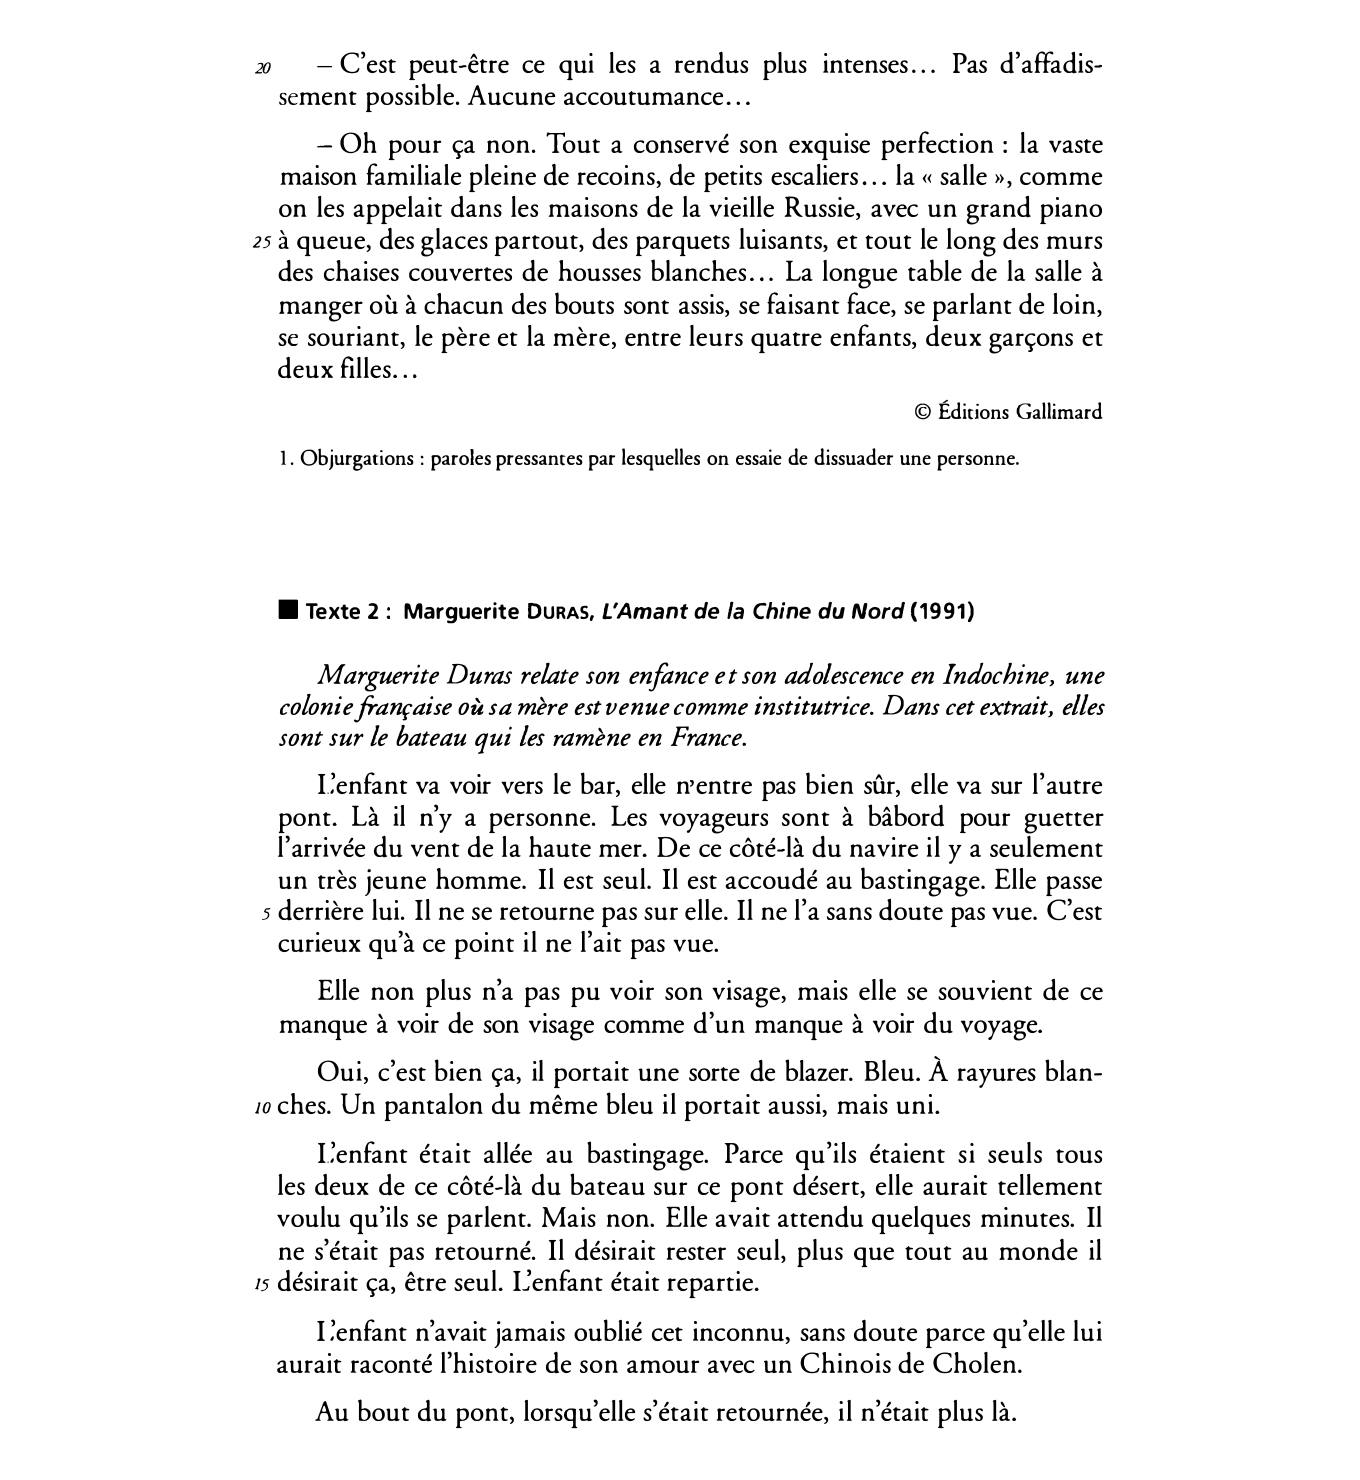 Prévisualisation du document Vous commenterez le texte de Marguerite Duras à partir de : « Elle descend dans les coursives » (l. 19) jusqu’à la fin.